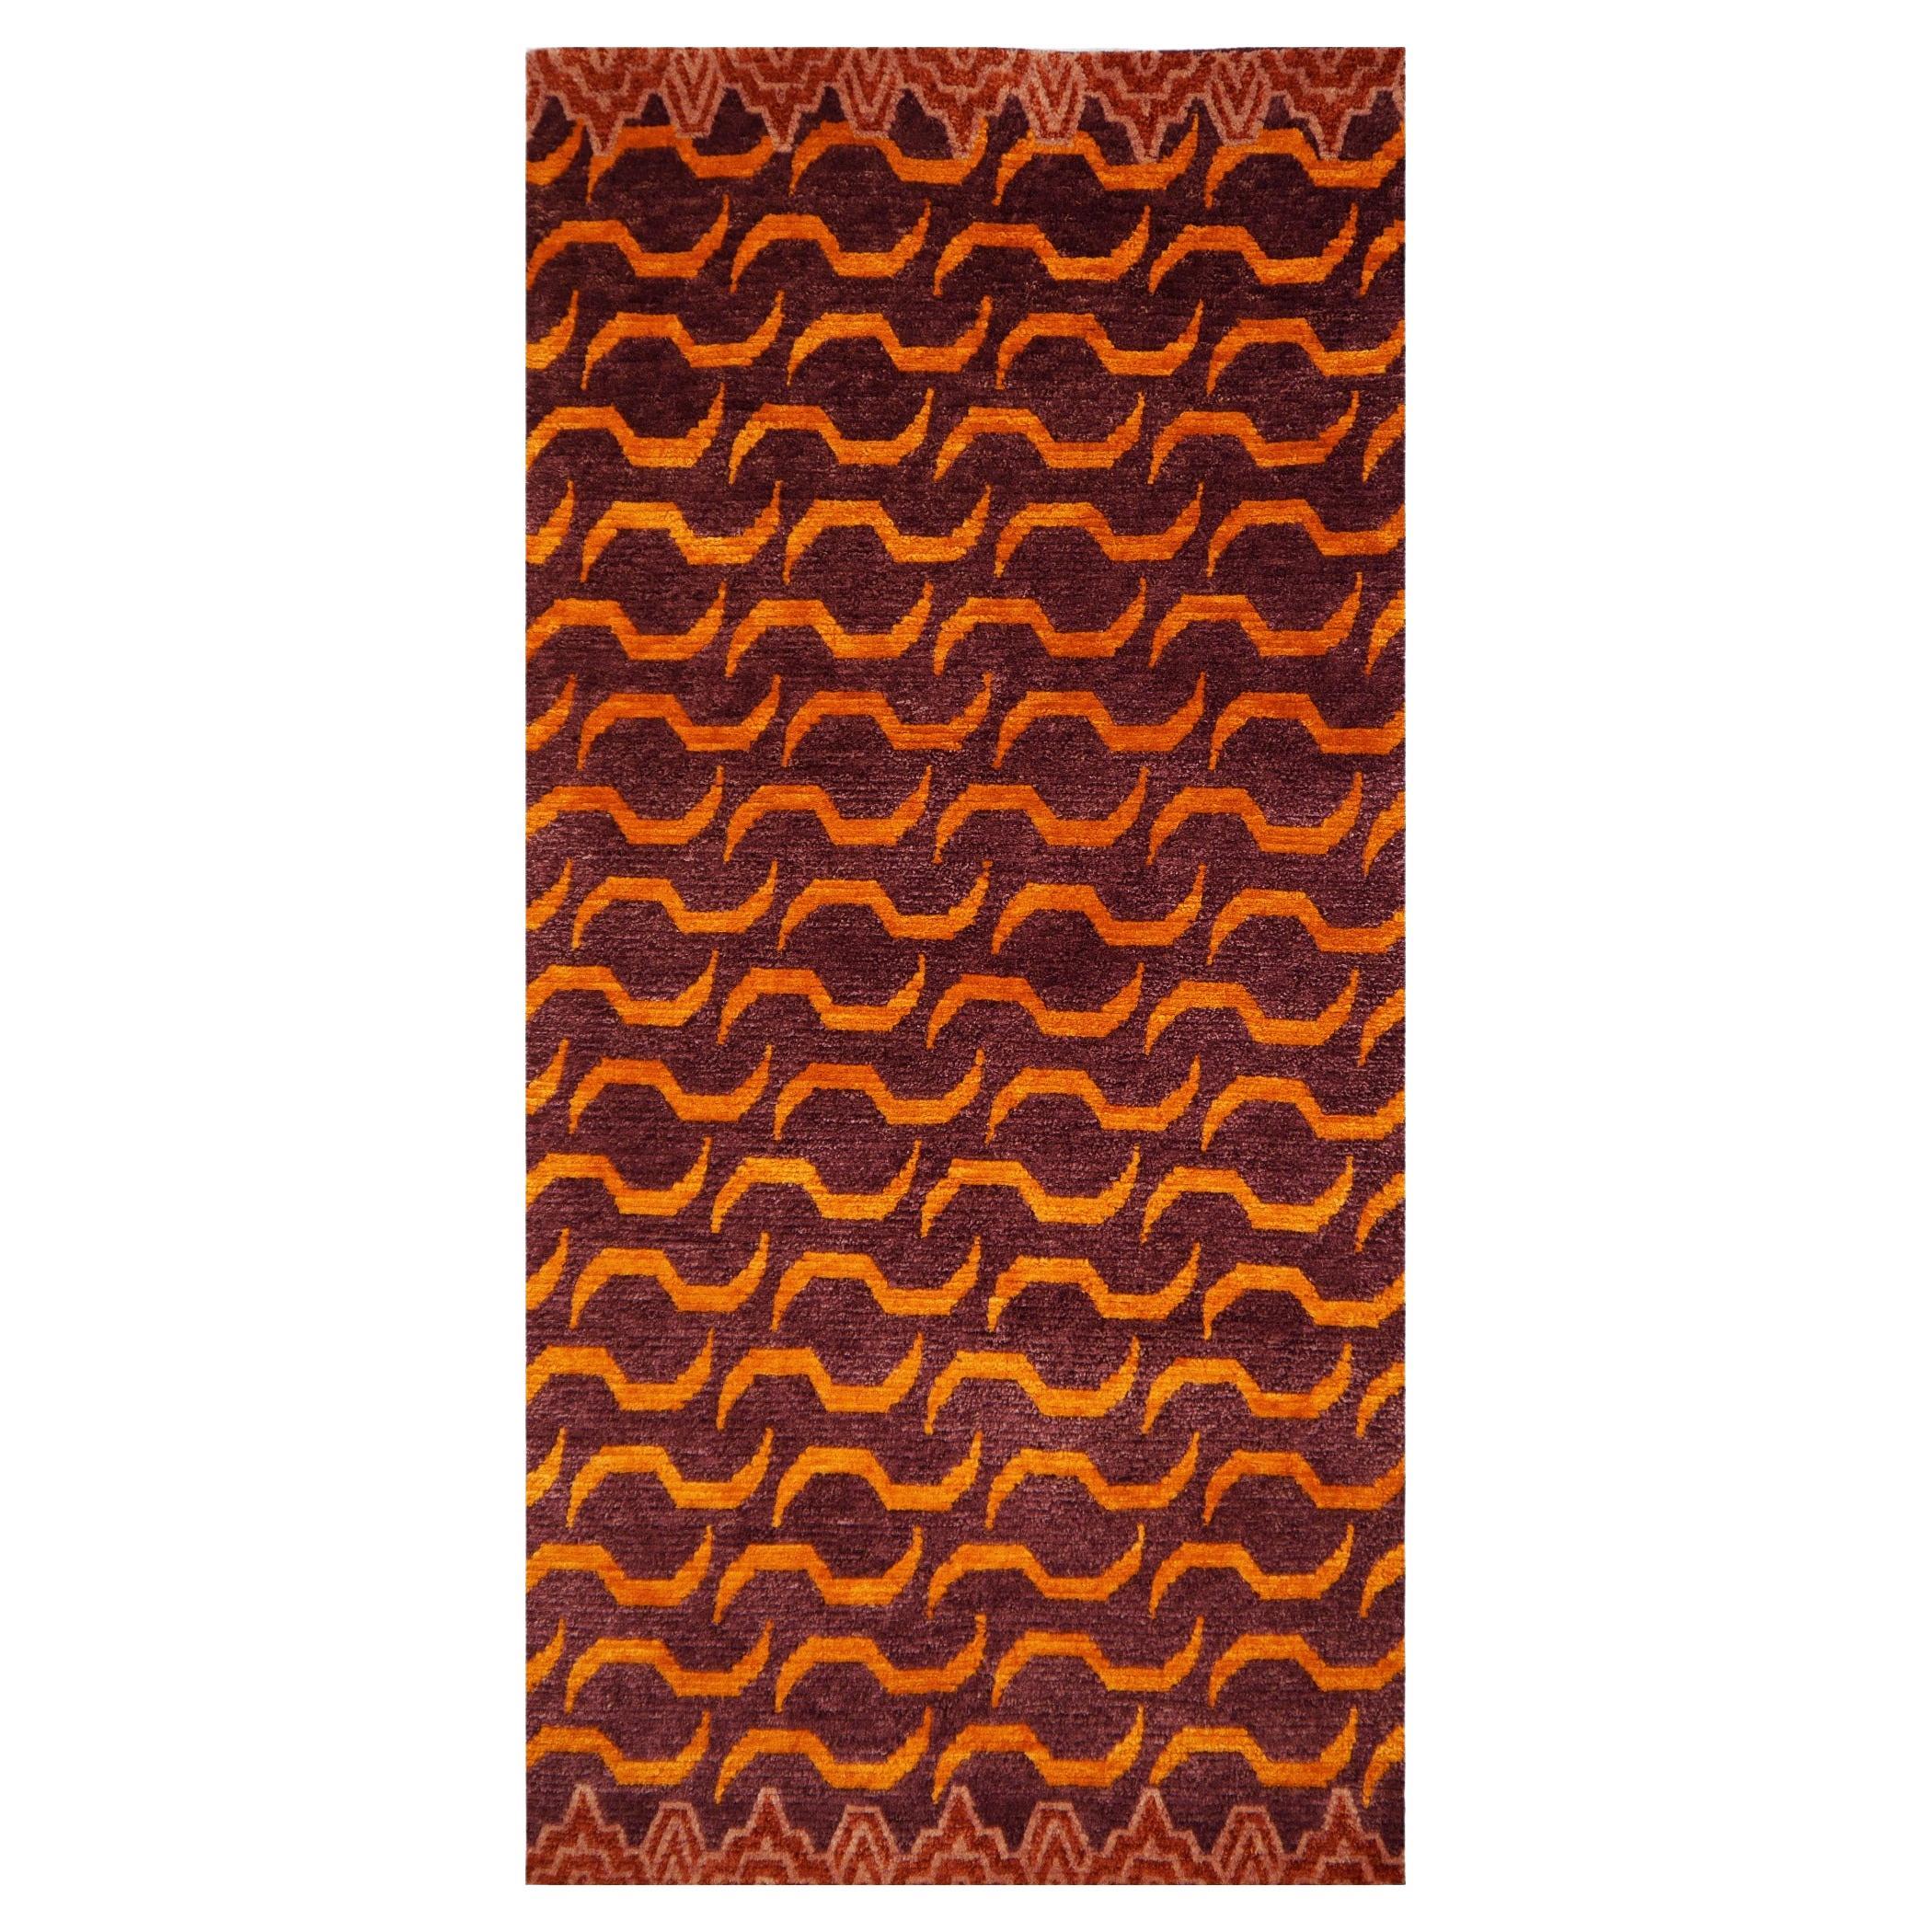 Tibetischer Tigerteppich aus Seide und Wolle, handgeknüpft, Djoharian Kollektion, antikes Design